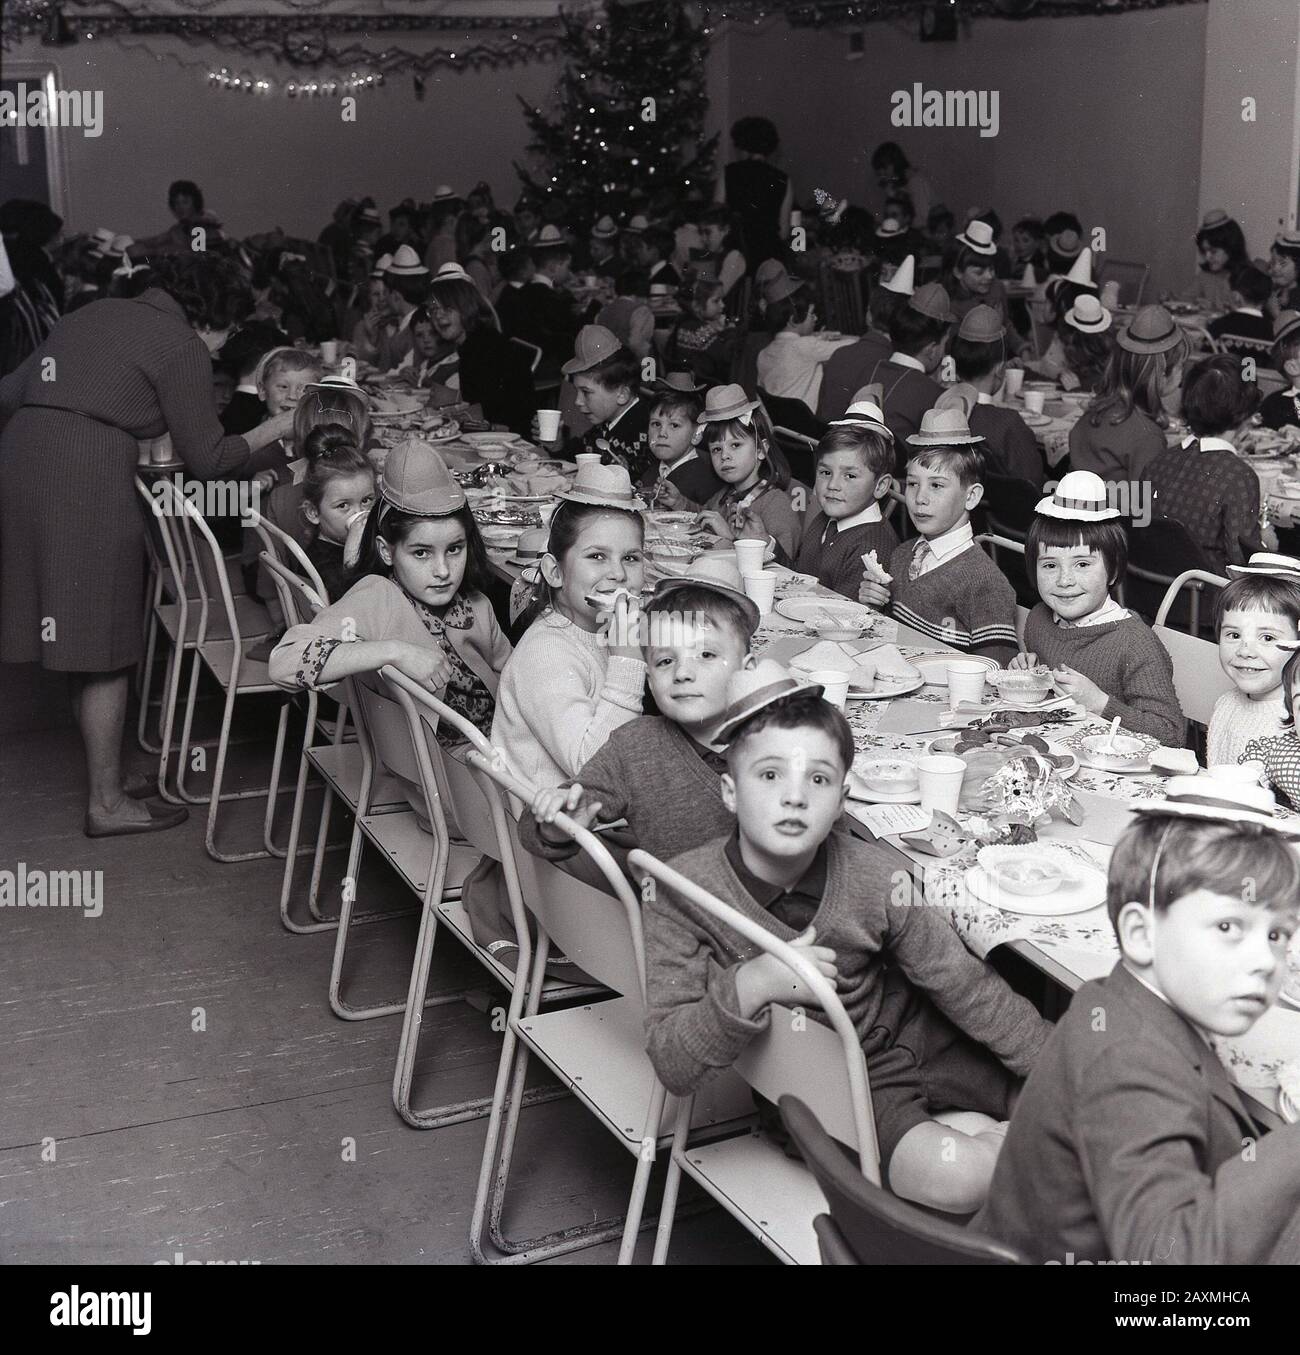 1960er Jahre, historisch, in einem Speisesaal, kleine Schulkinder in Partyhüten, die gemeinsam bei einem weihnachtsessen Spaß haben, England, Großbritannien. Stockfoto